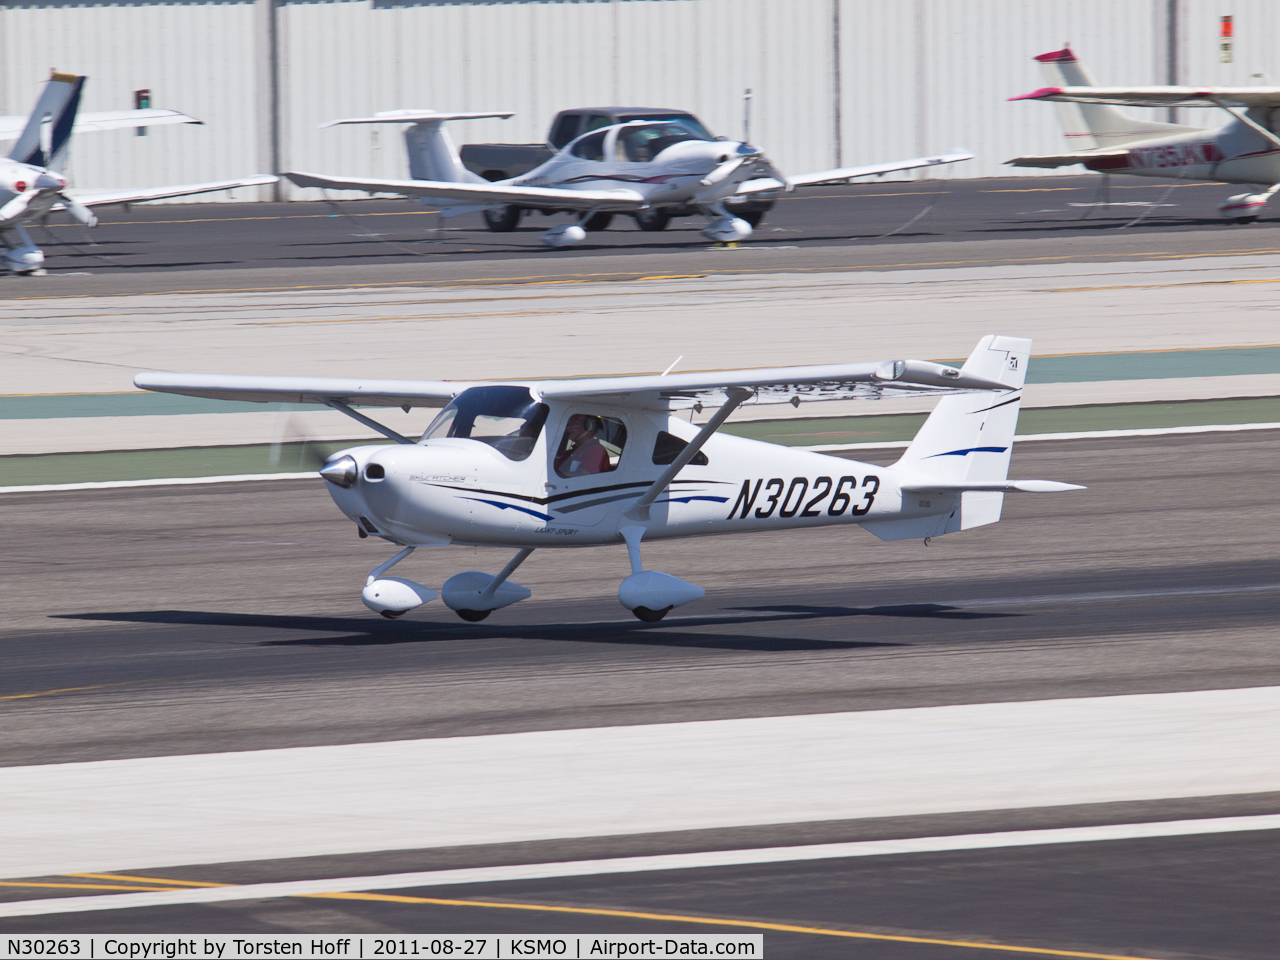 N30263, Cessna 162 Skycatcher C/N 16200092, N30263 departing from RWY 21